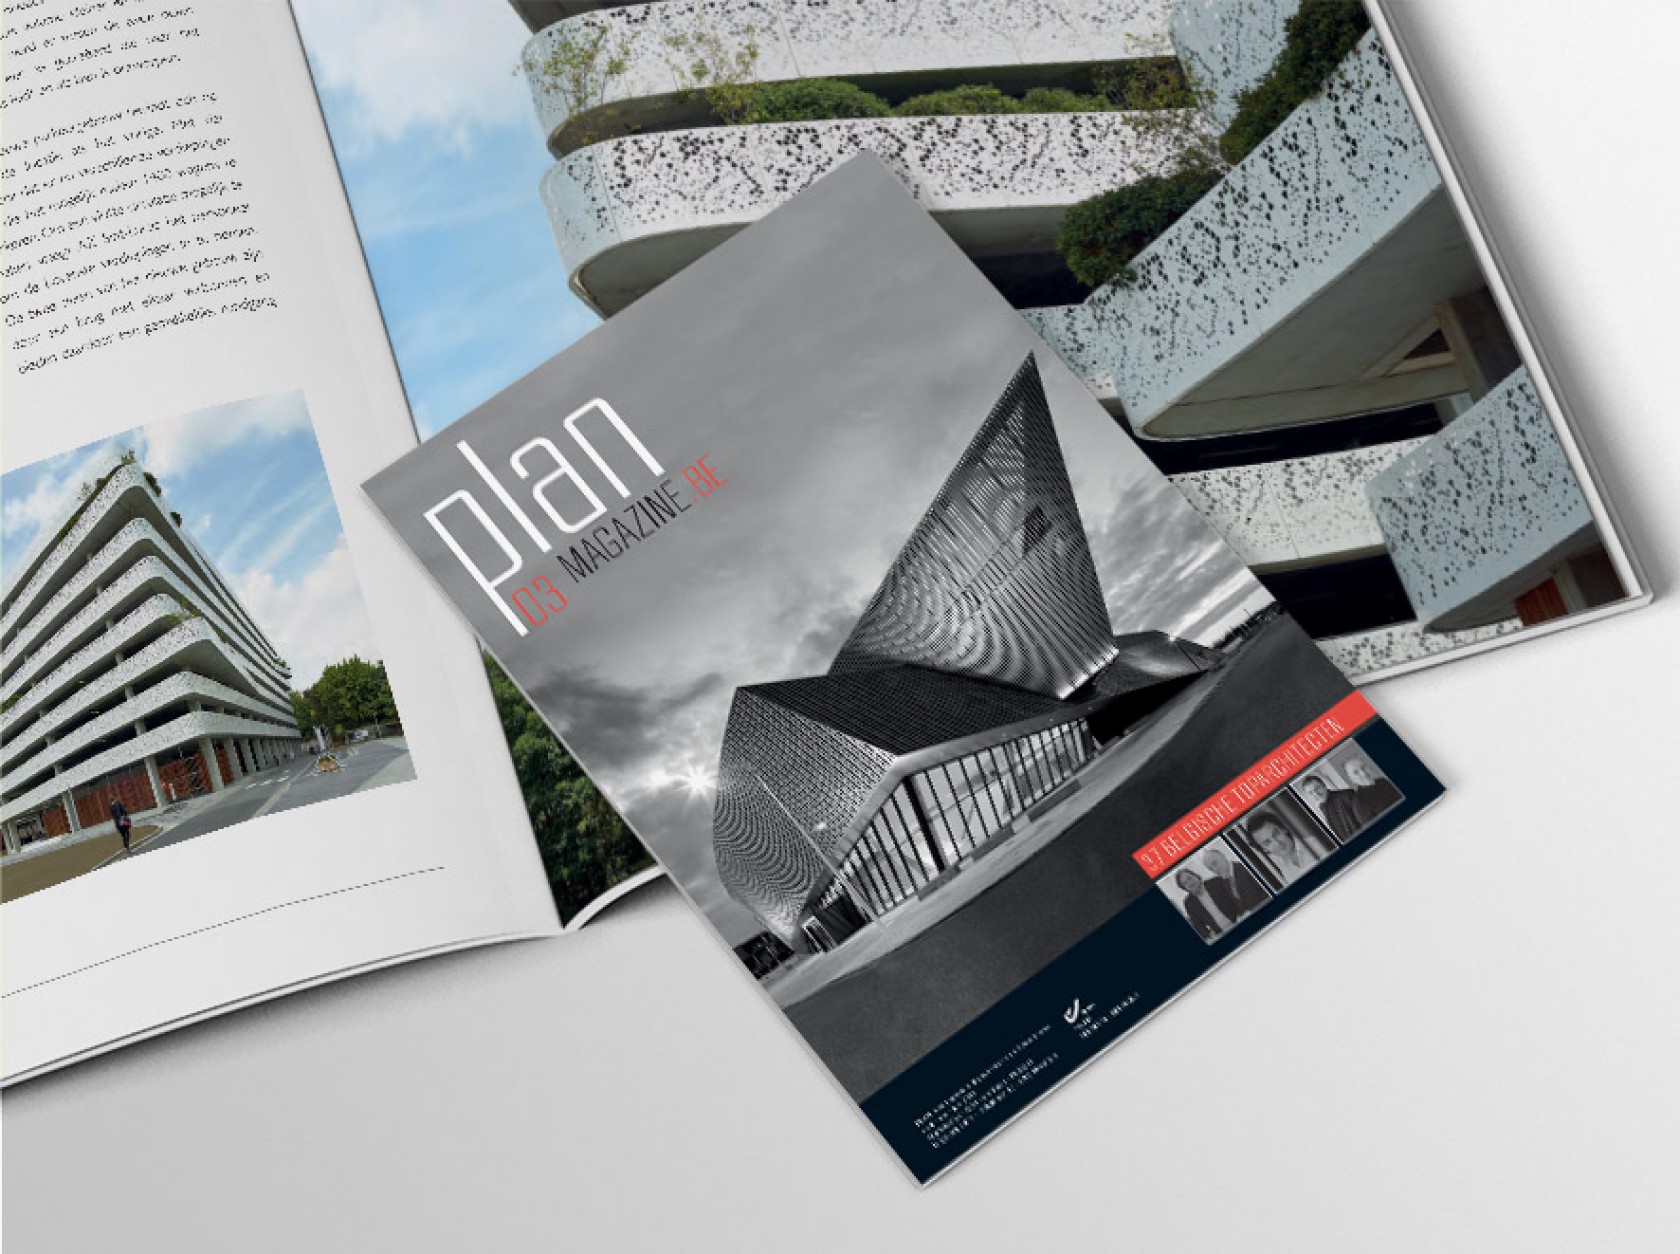 Abscis Architecten - Artikel Plan Magazine: 'meer dan een parkeergebouw'